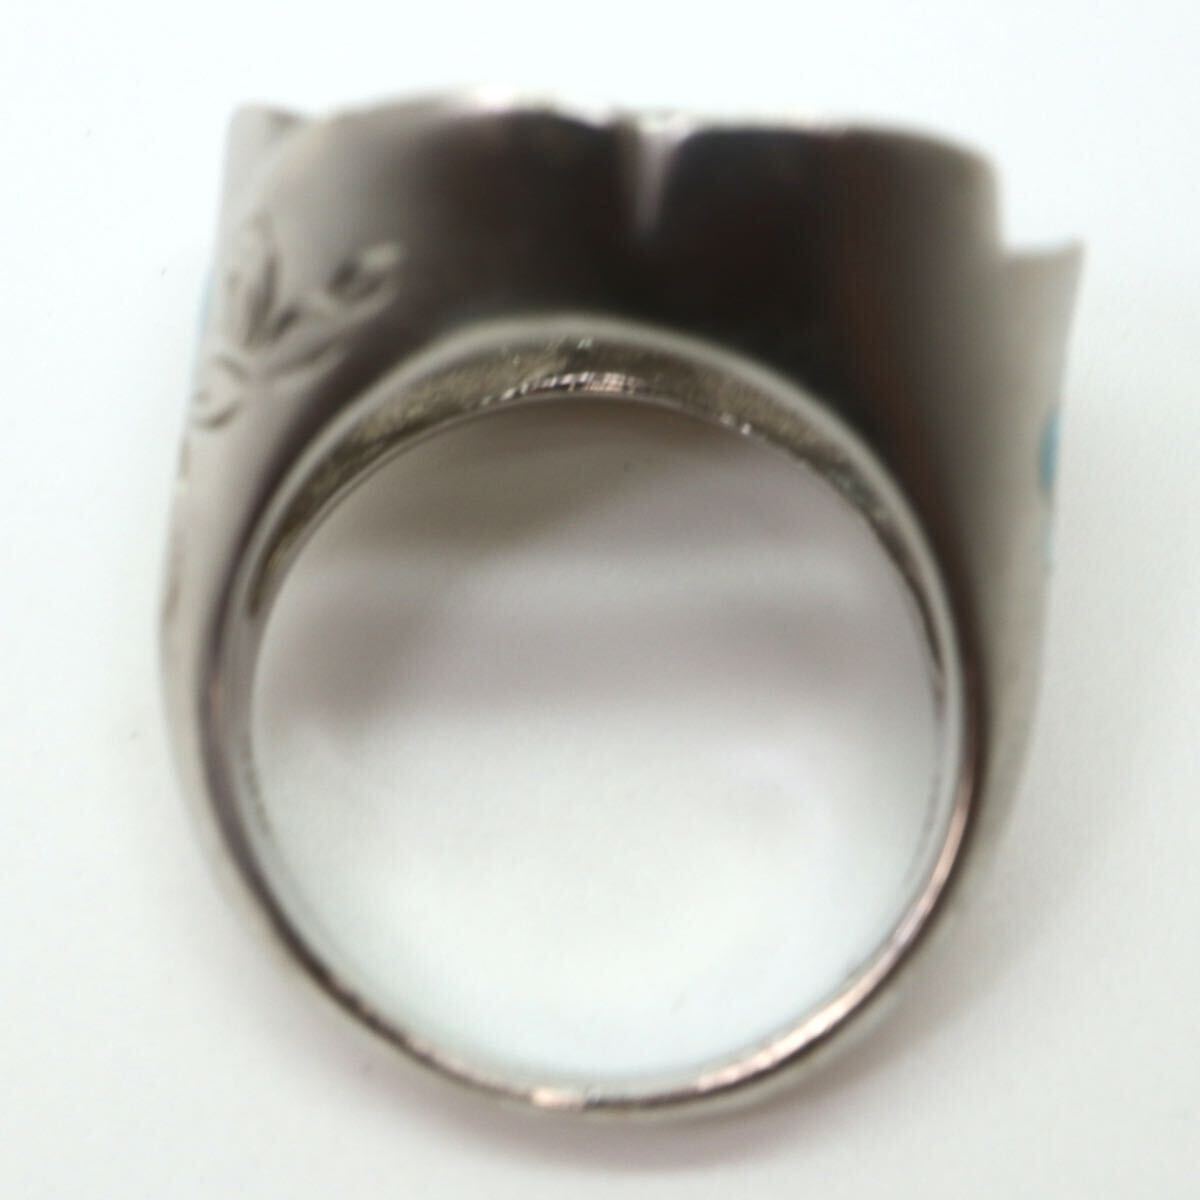 {K18WG натуральный бриллиант имеется кольцо }M примерно 13.3g примерно 9.5 номер 0.05ct diamond ring ювелирные изделия jewelry кольцо FA3/FA3